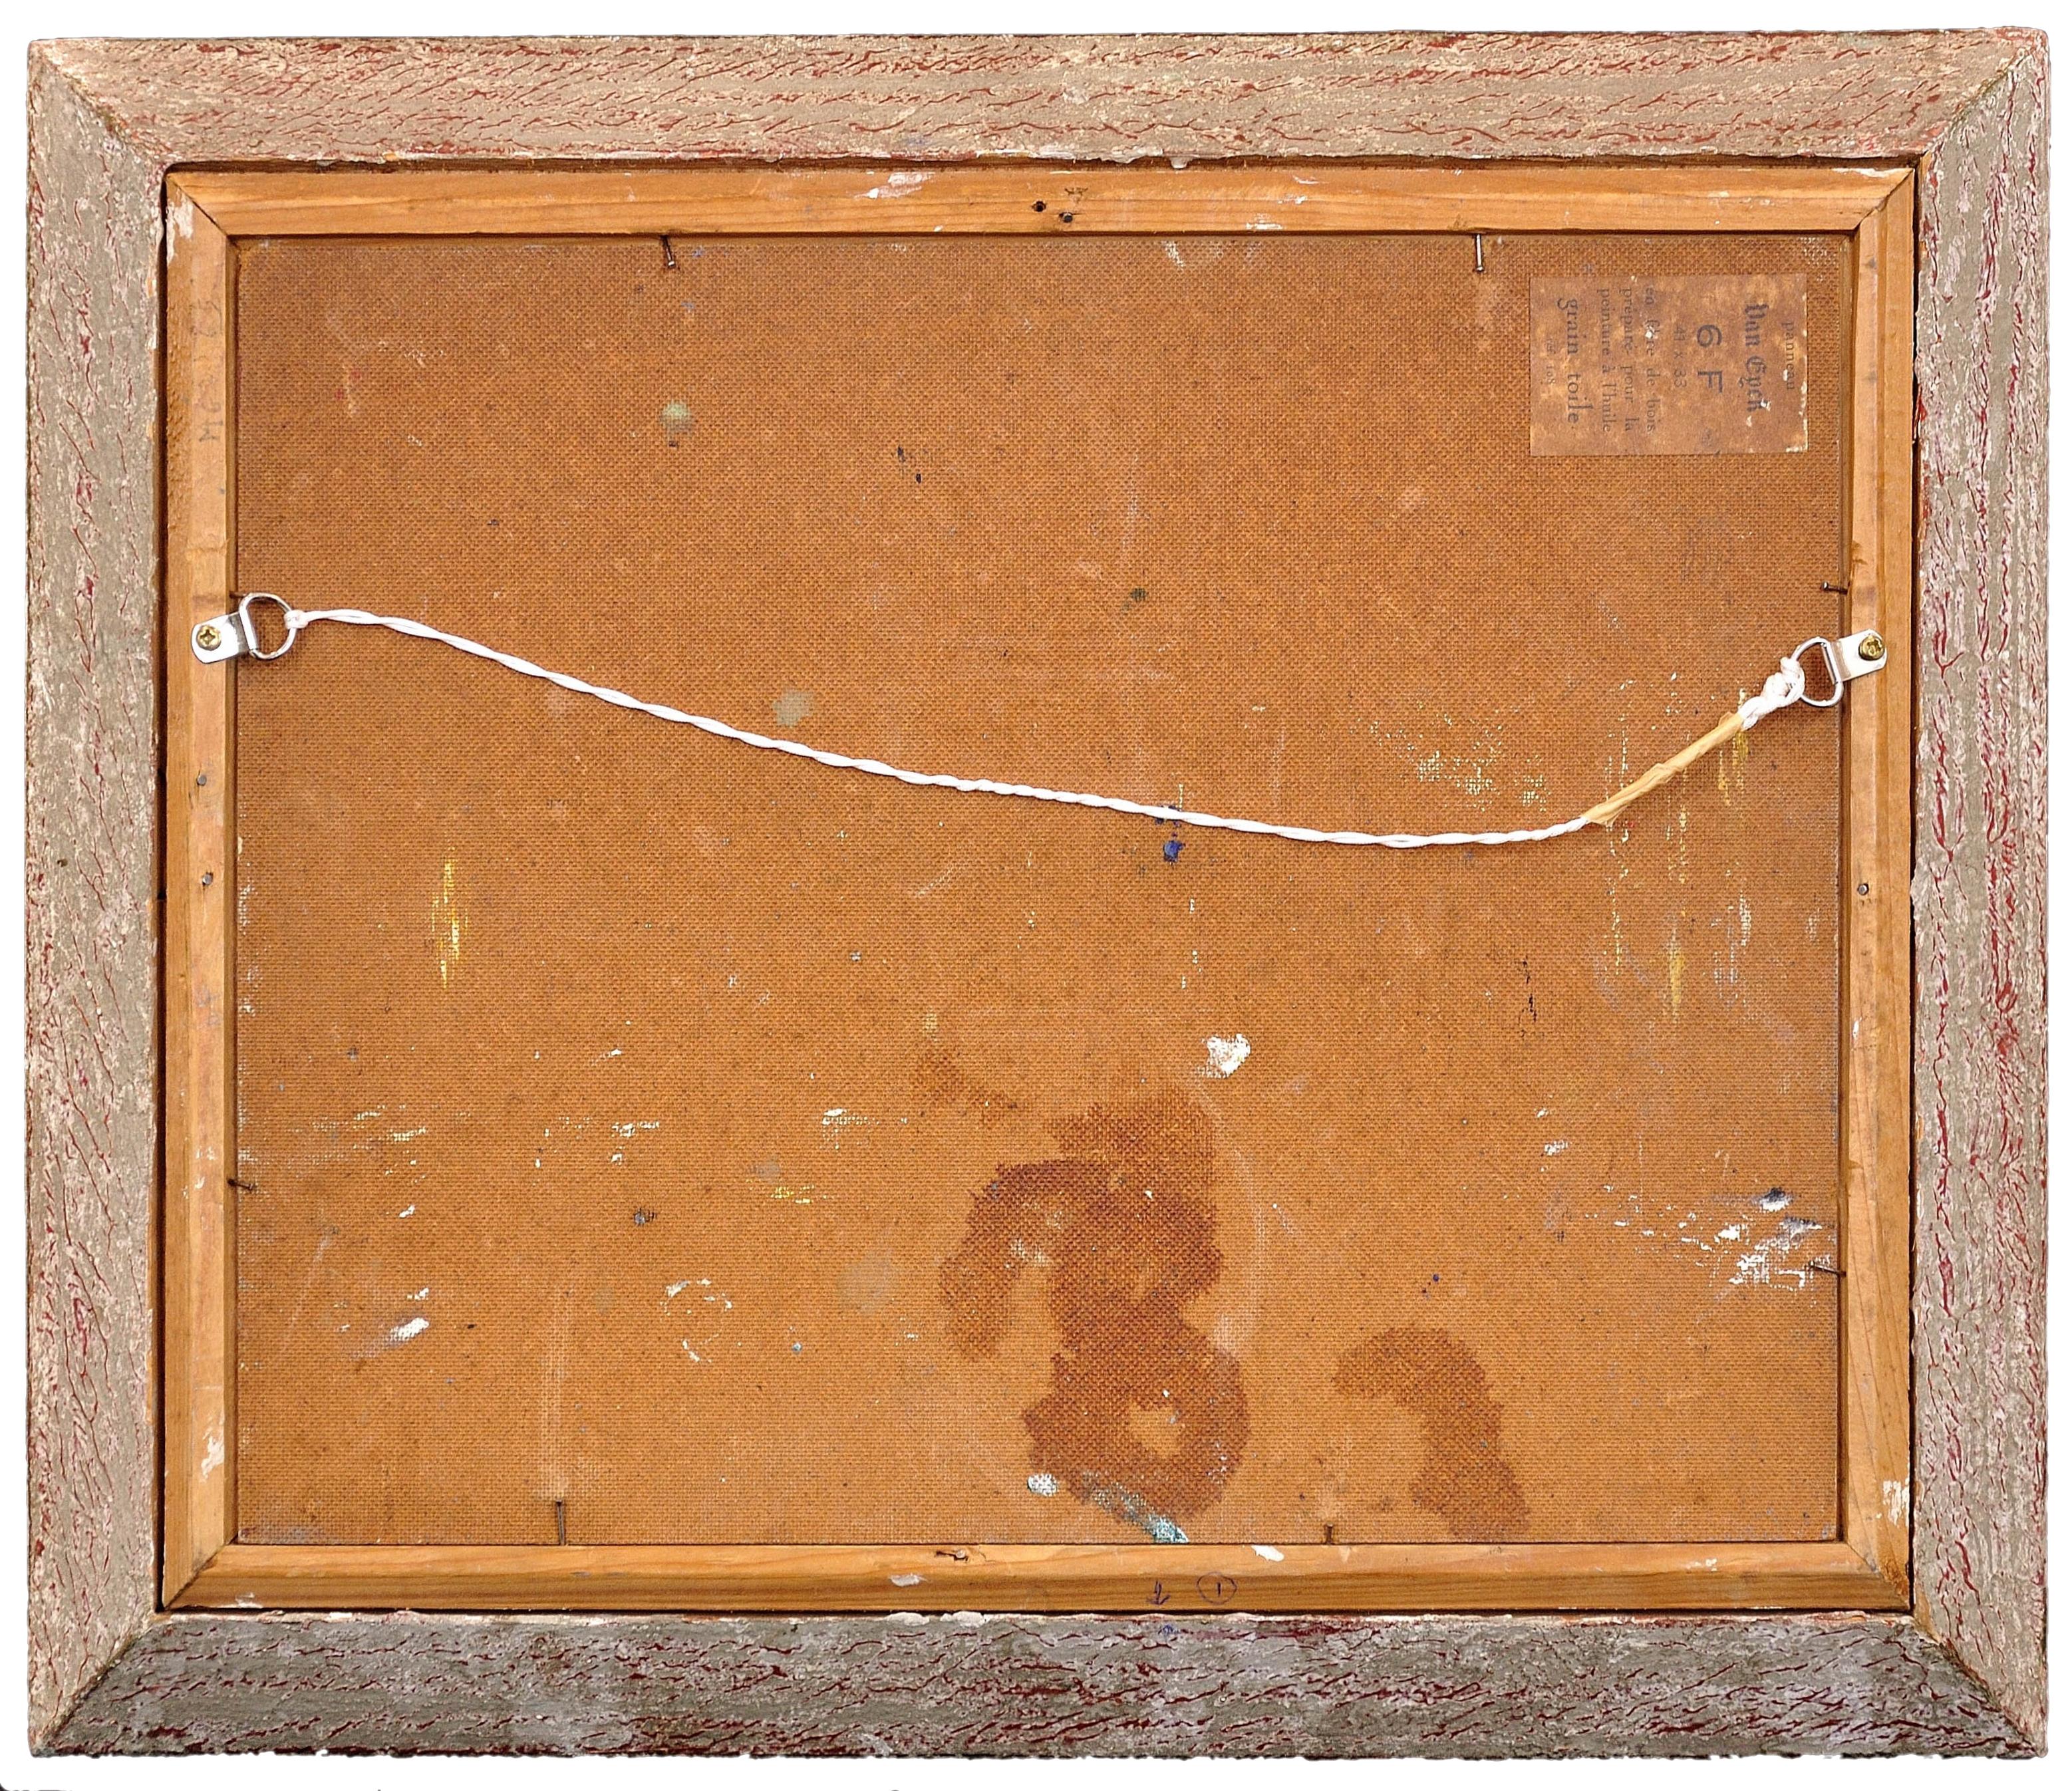 Alfred Henri Pailhès
French ( b.1902 - d.1991 ).
Rendez-Vous des Havrais Pour Leur Promenade Dominicale
Oil on Panel.
Signed lower left.
Image size 12.4 inches x 15.6 inches ( 31.5cm x 39.5cm ).
Frame size 17.7 inches x 21.3 inches ( 45cm x 54cm